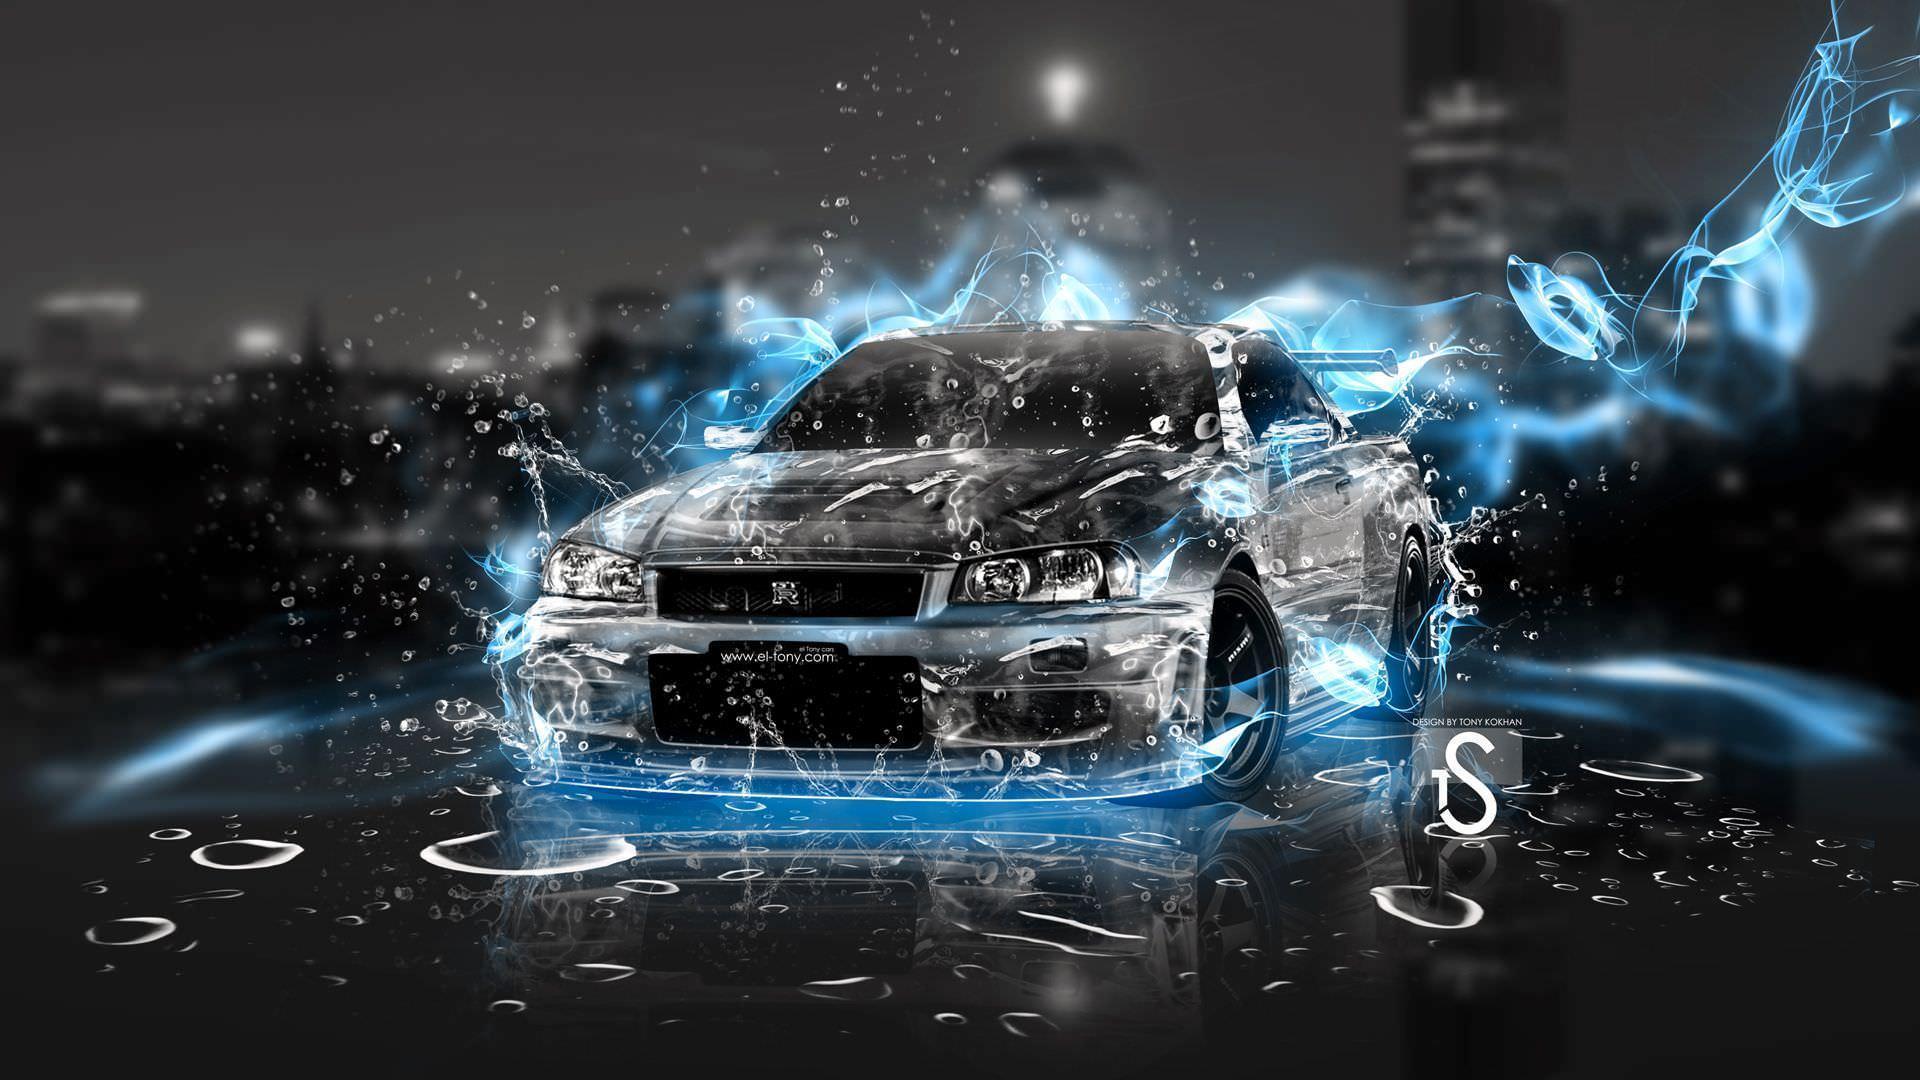 FREE HD Car Desktop Wallpaper in PSD